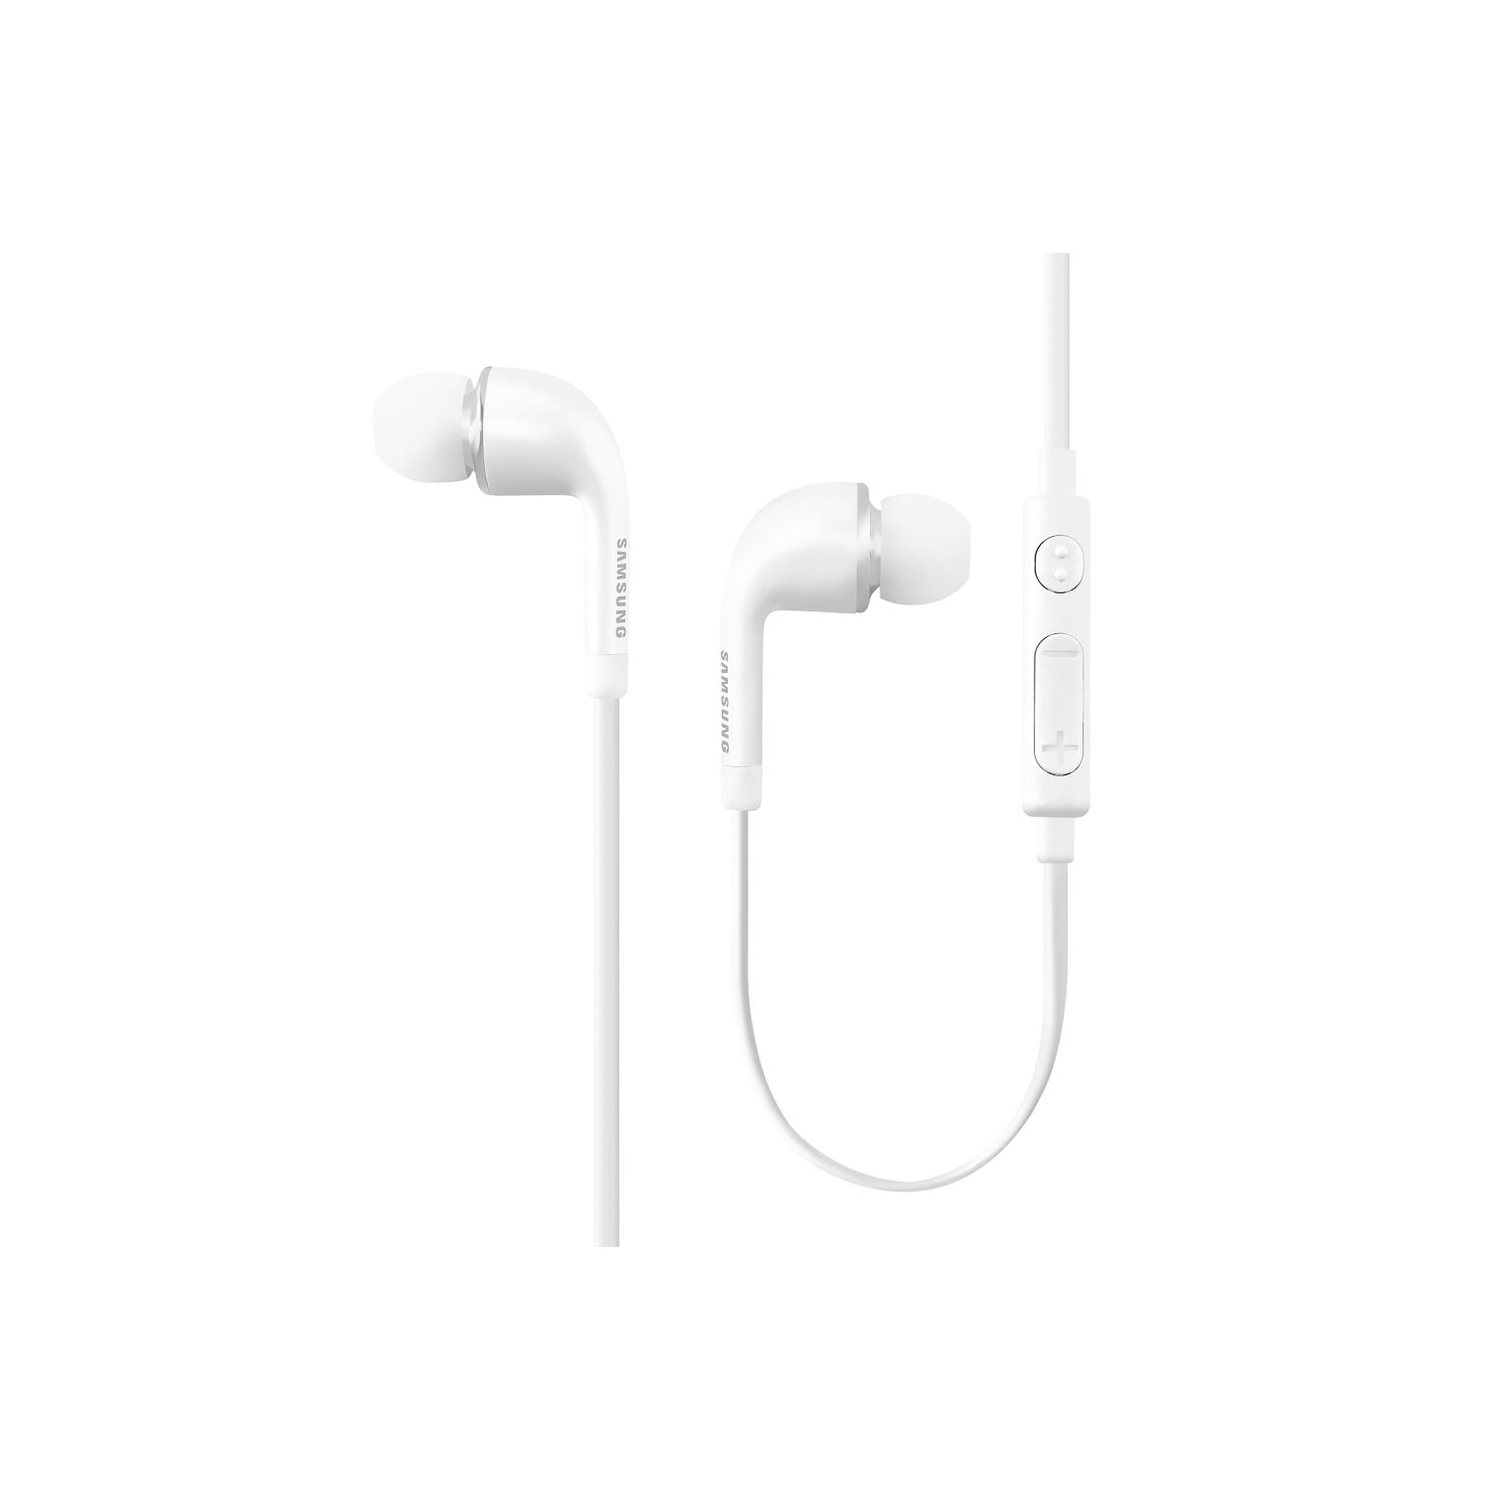 Samsung 3.5mm In-Ear Stereo Headset Earbud Headphones OEM EO-EG900BW,Open Box, White